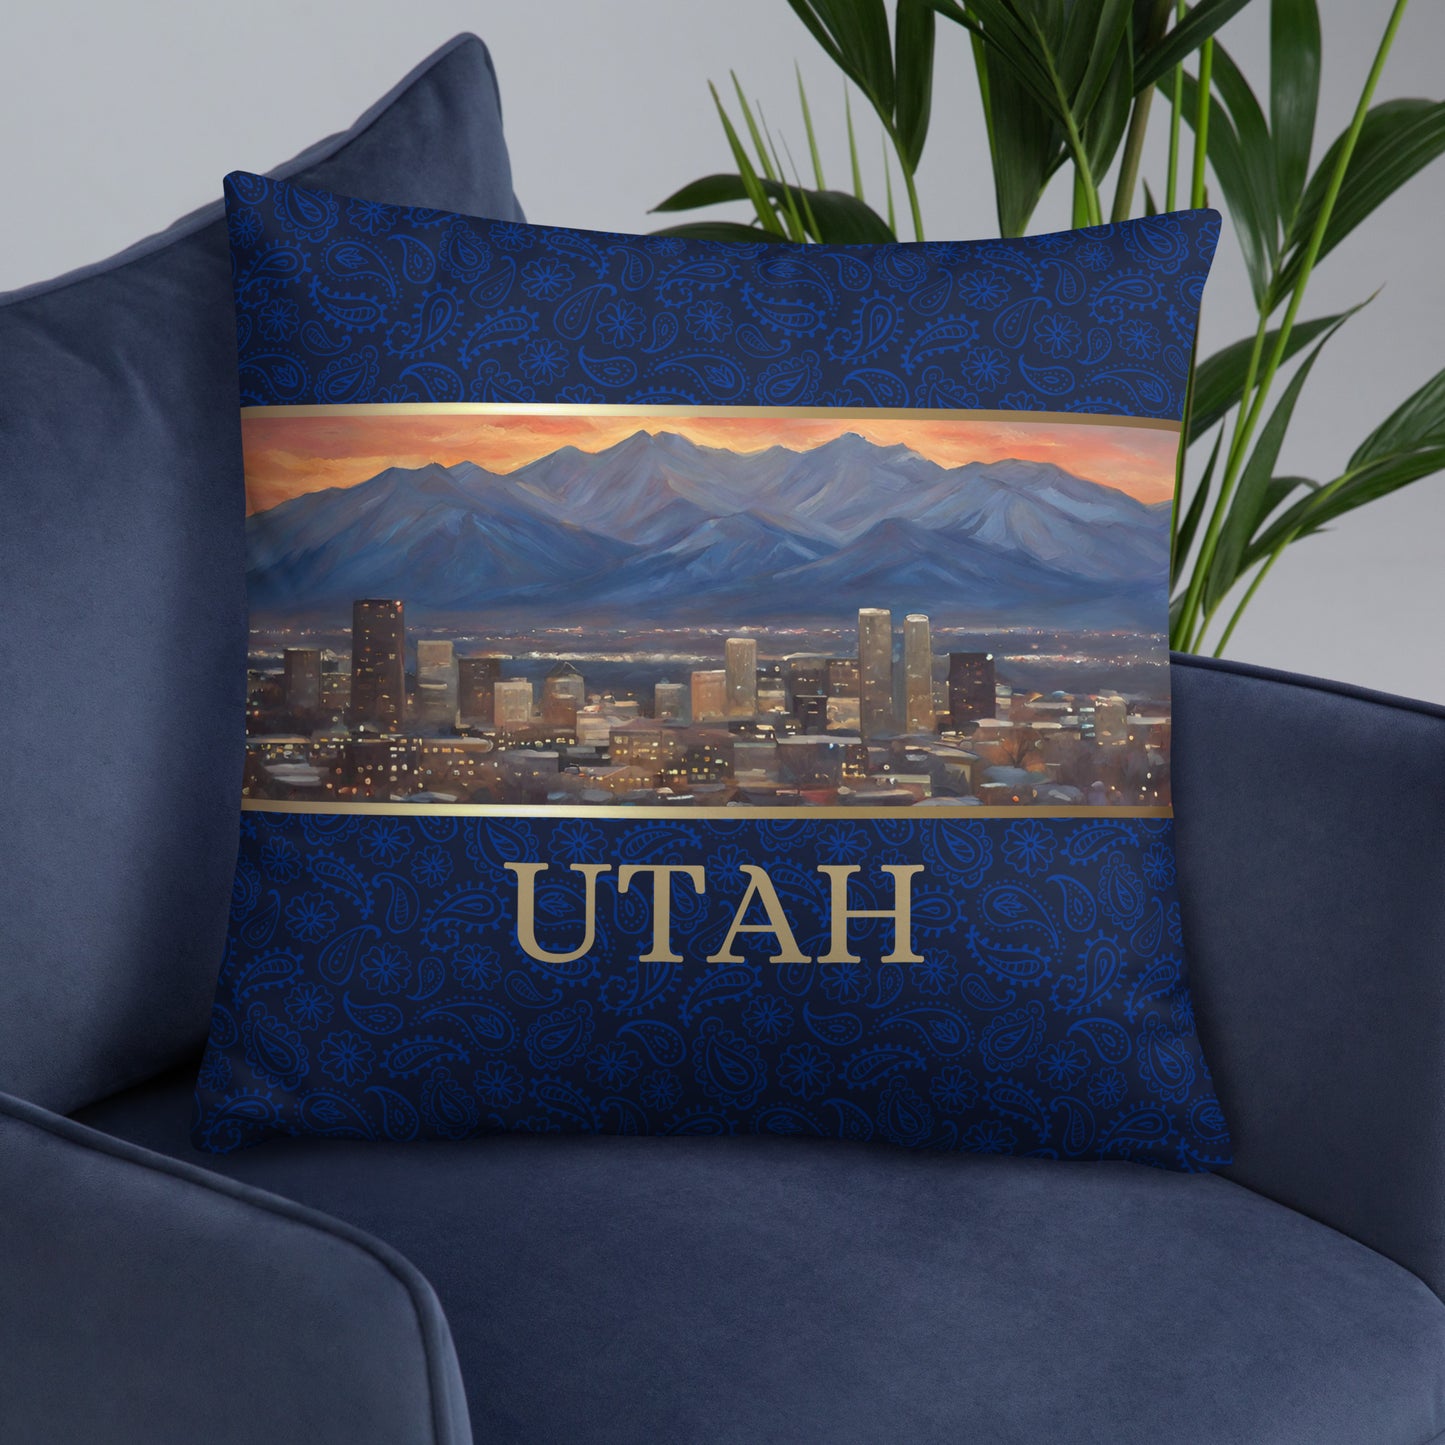 Utah Travel Gift #2 | Utah Vacation Gift | Utah Travel Souvenir | Utah Vacation Memento | Utah Home Décor | Keepsake Souvenir Gift | Travel Vacation Gift | Utah United States Gift